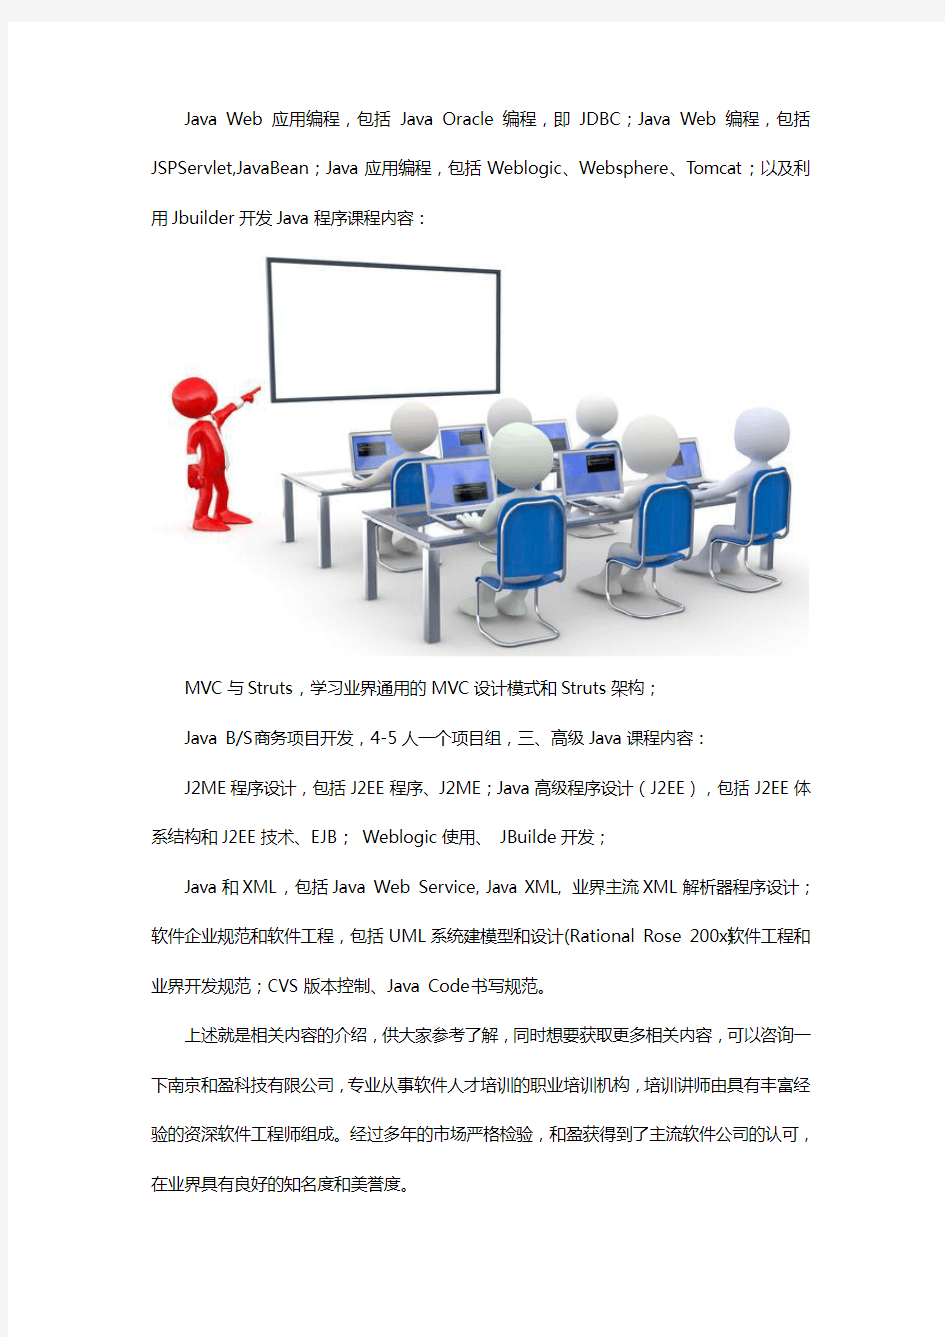 南京Java培训包括哪些课程